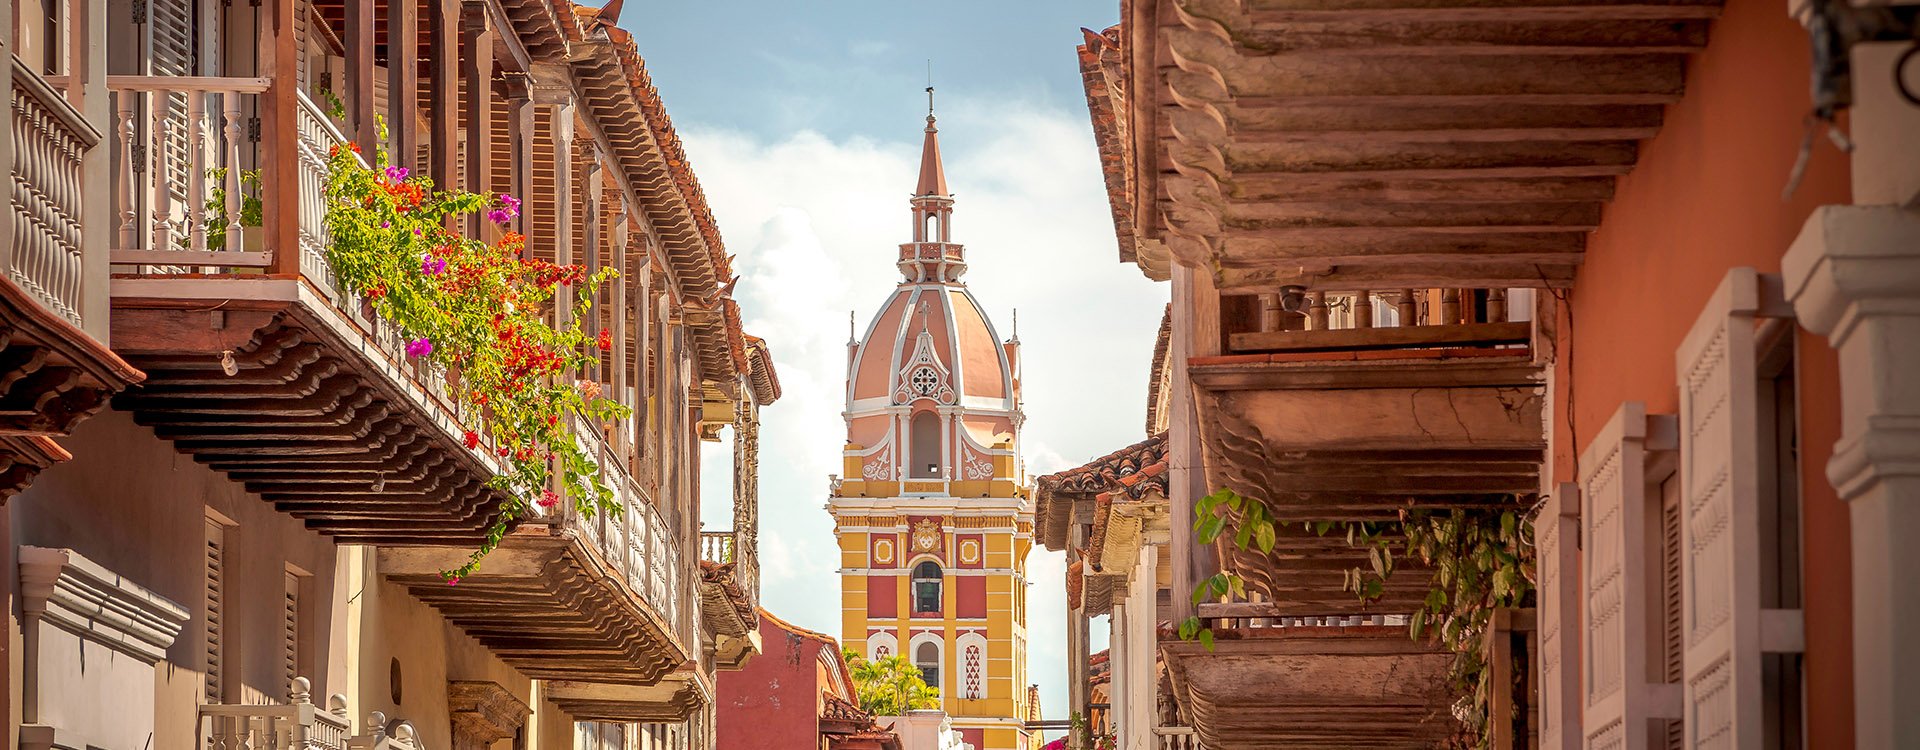 Cartagena de Indias the walled city - Colombia